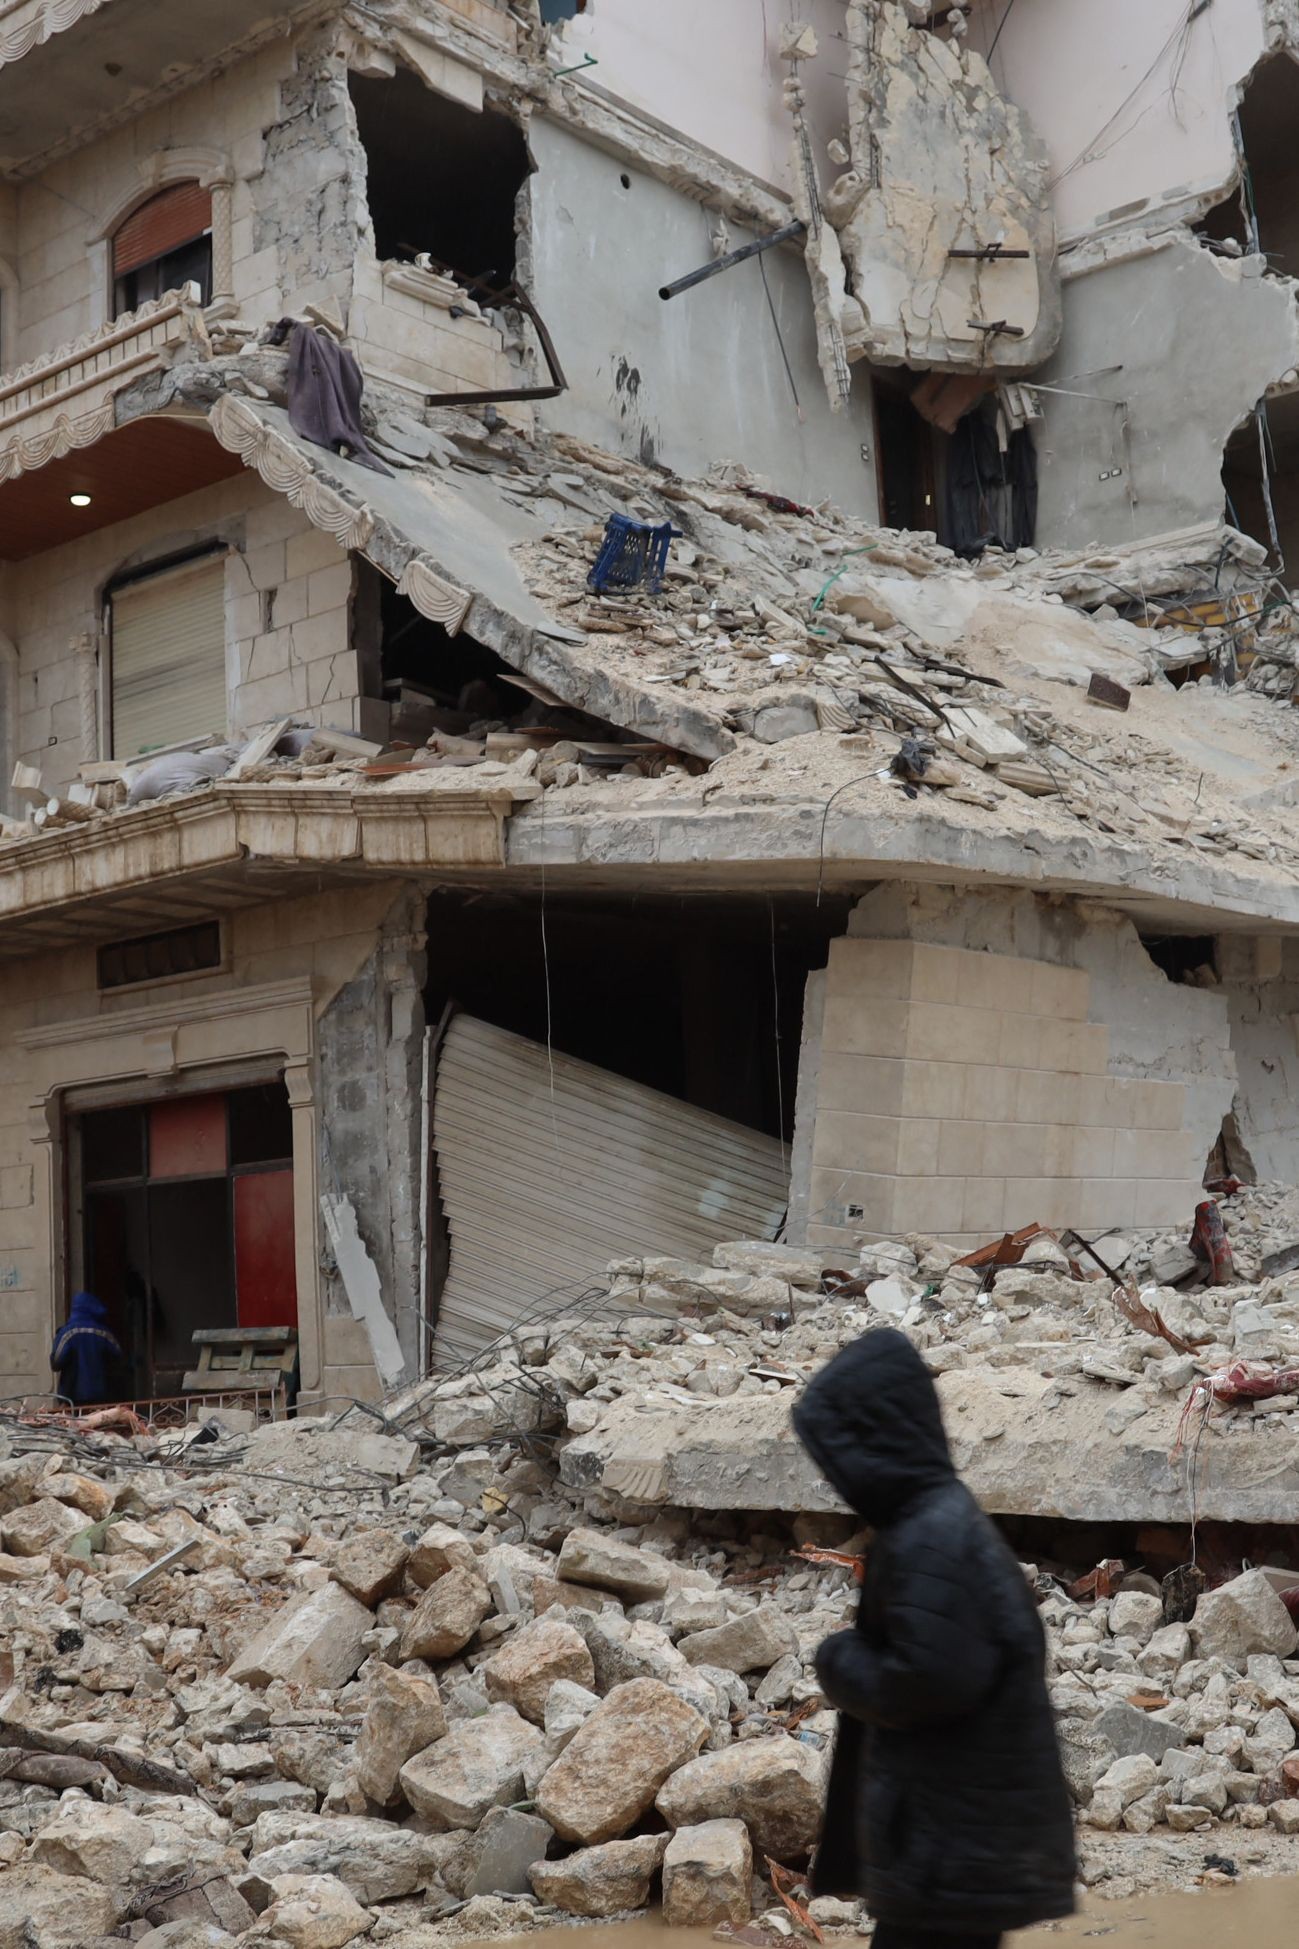 Jovem passa por escombros de prédio após terremoto na cidade de Sarmada, no interior da província de Idlib, no noroeste da Síria, em 6 de fevereiro de 2023 — Foto: Mohammed Al-Rifai / AFP